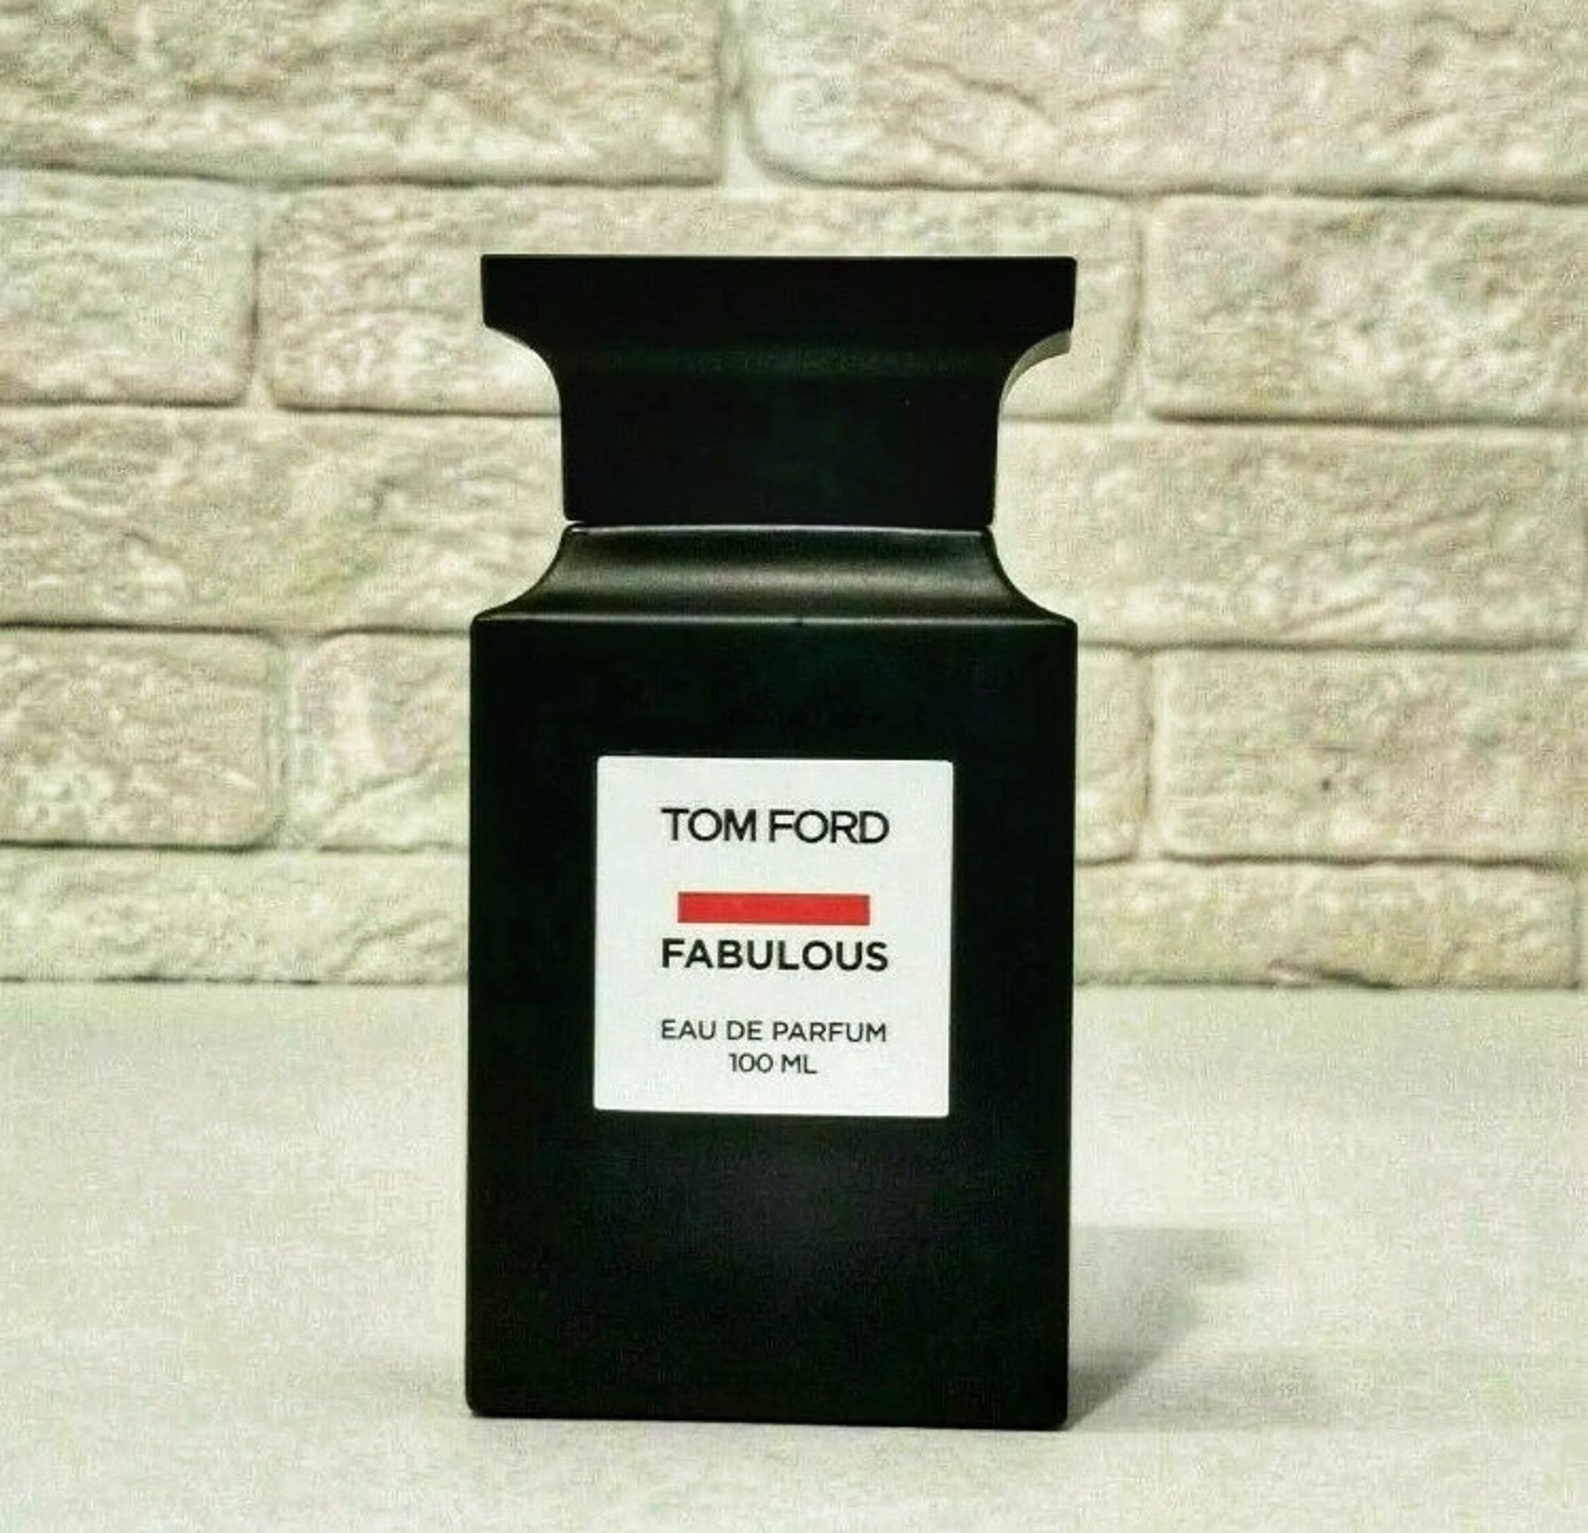 Tom Ford Fabulous 100 ml Eau de Parfum | Etsy